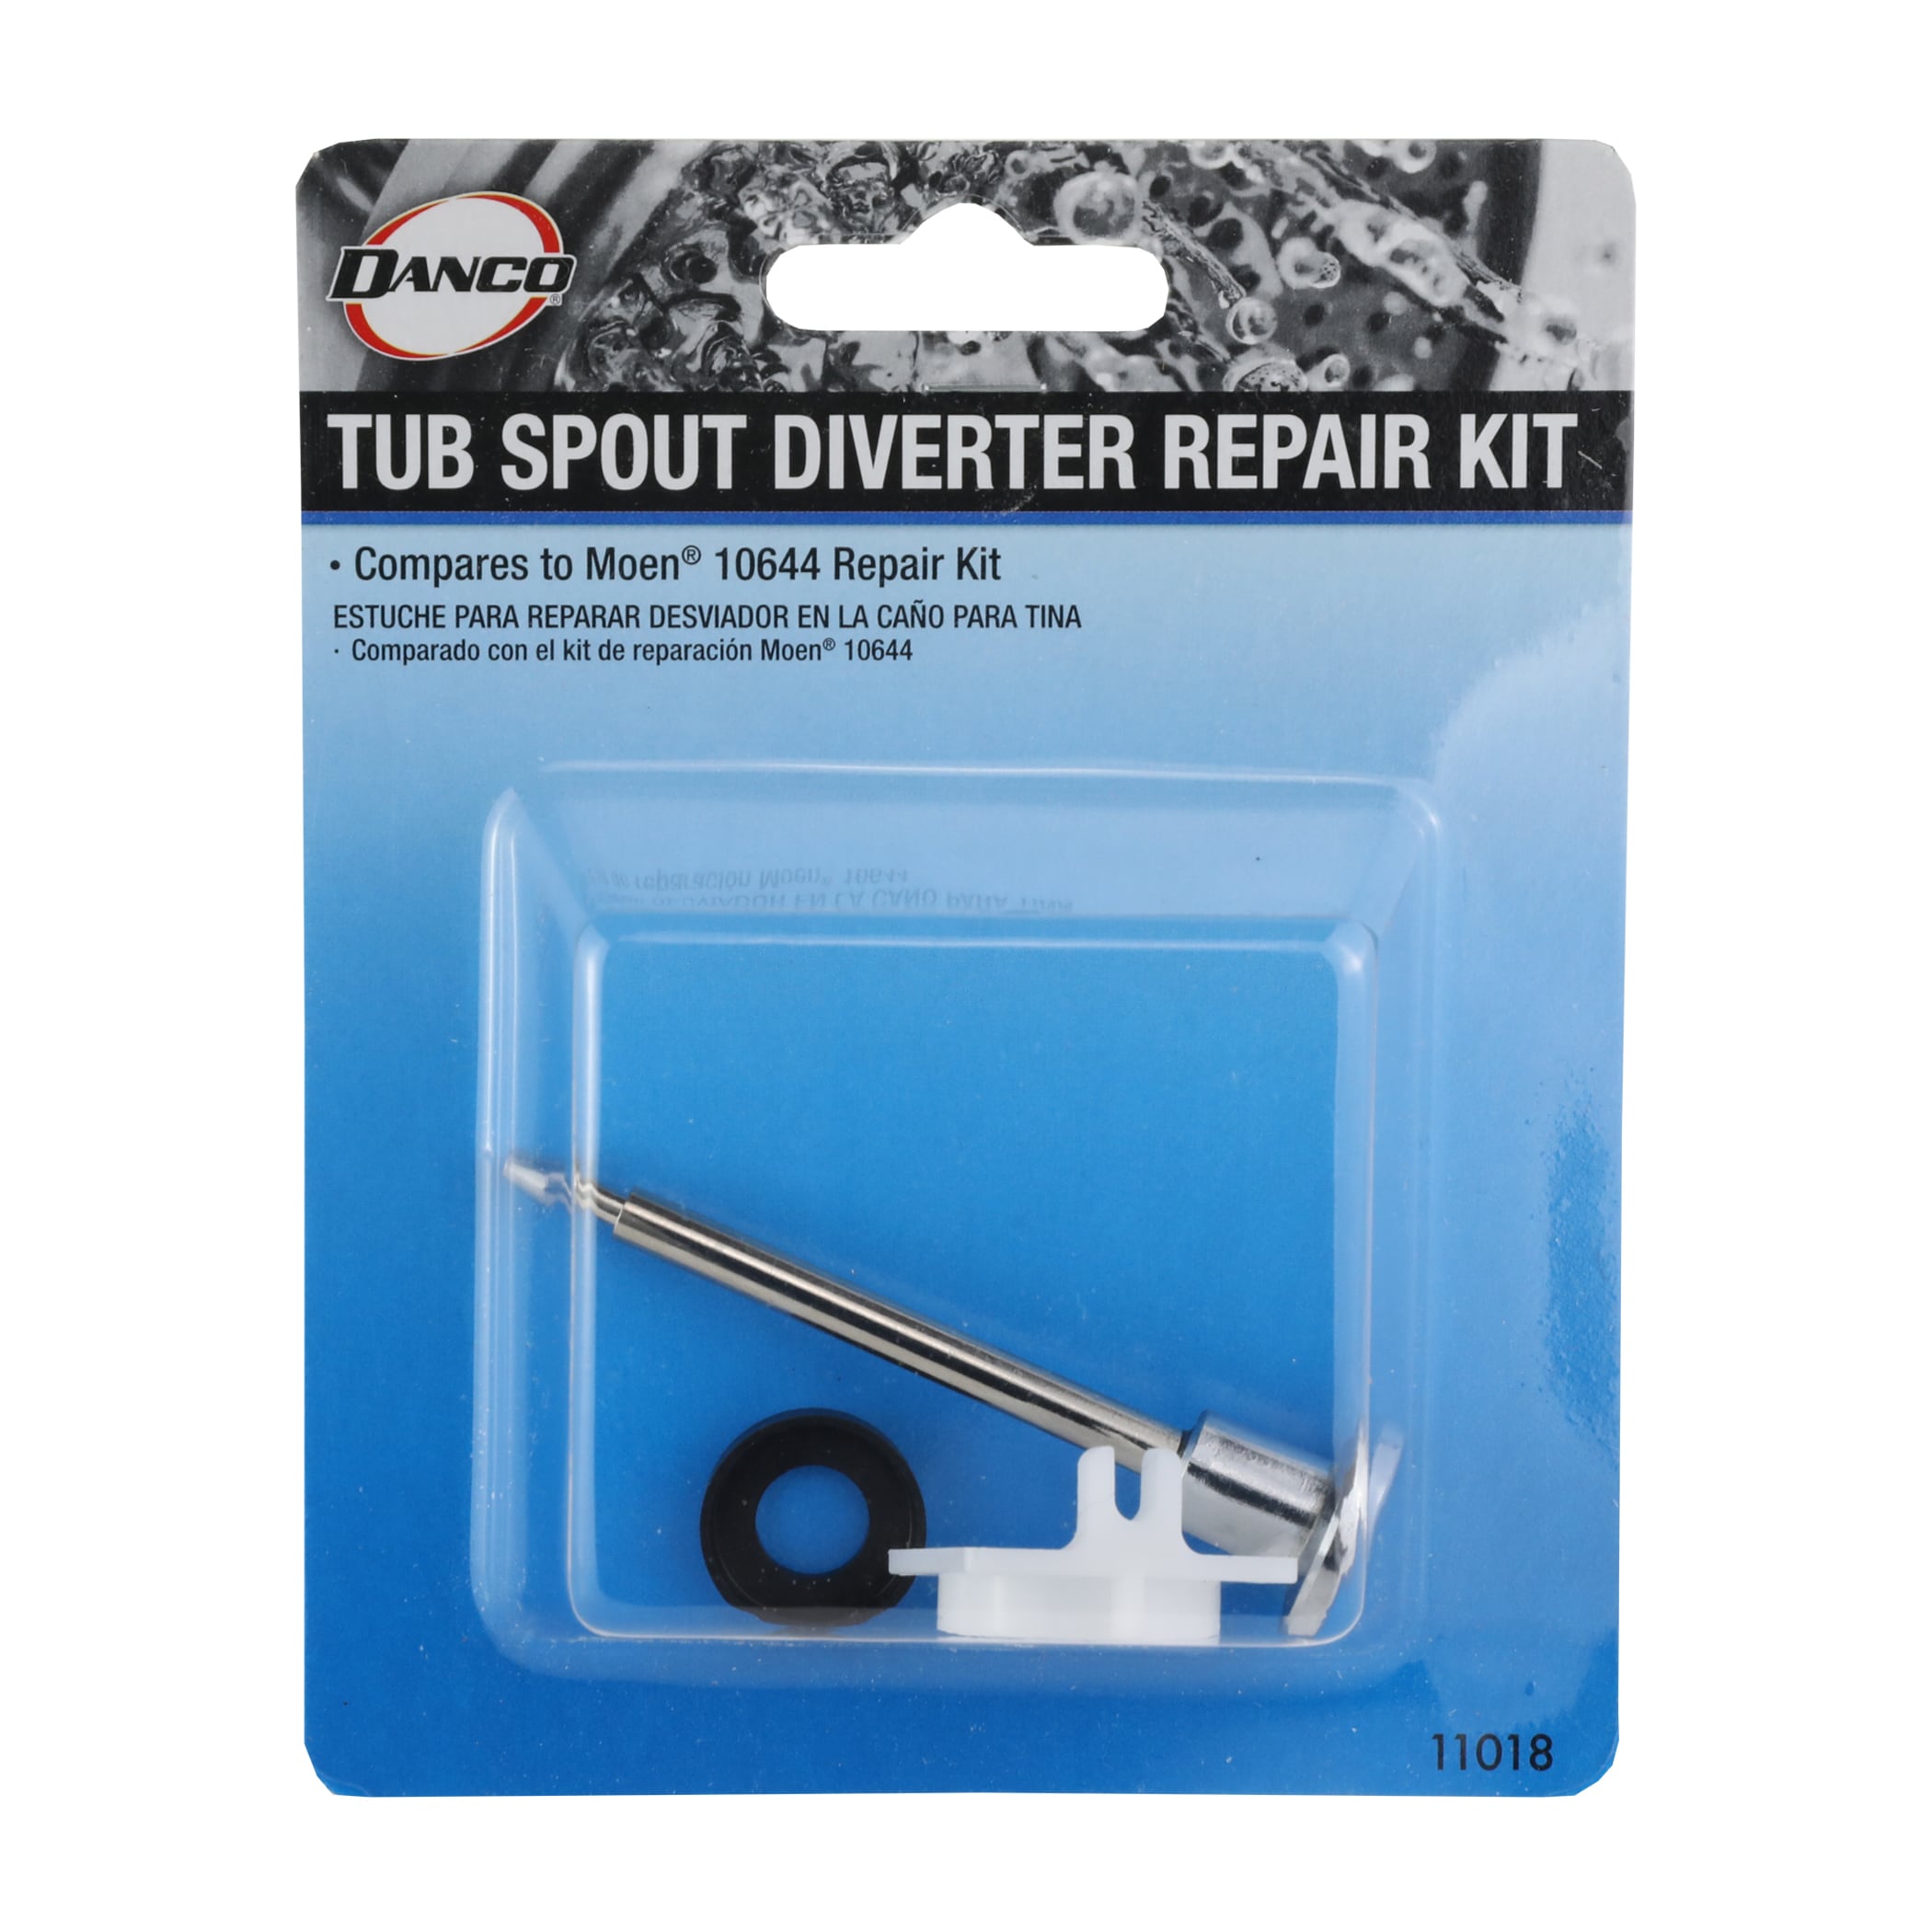 Danco Tub Spout Diverter Repair Kit For